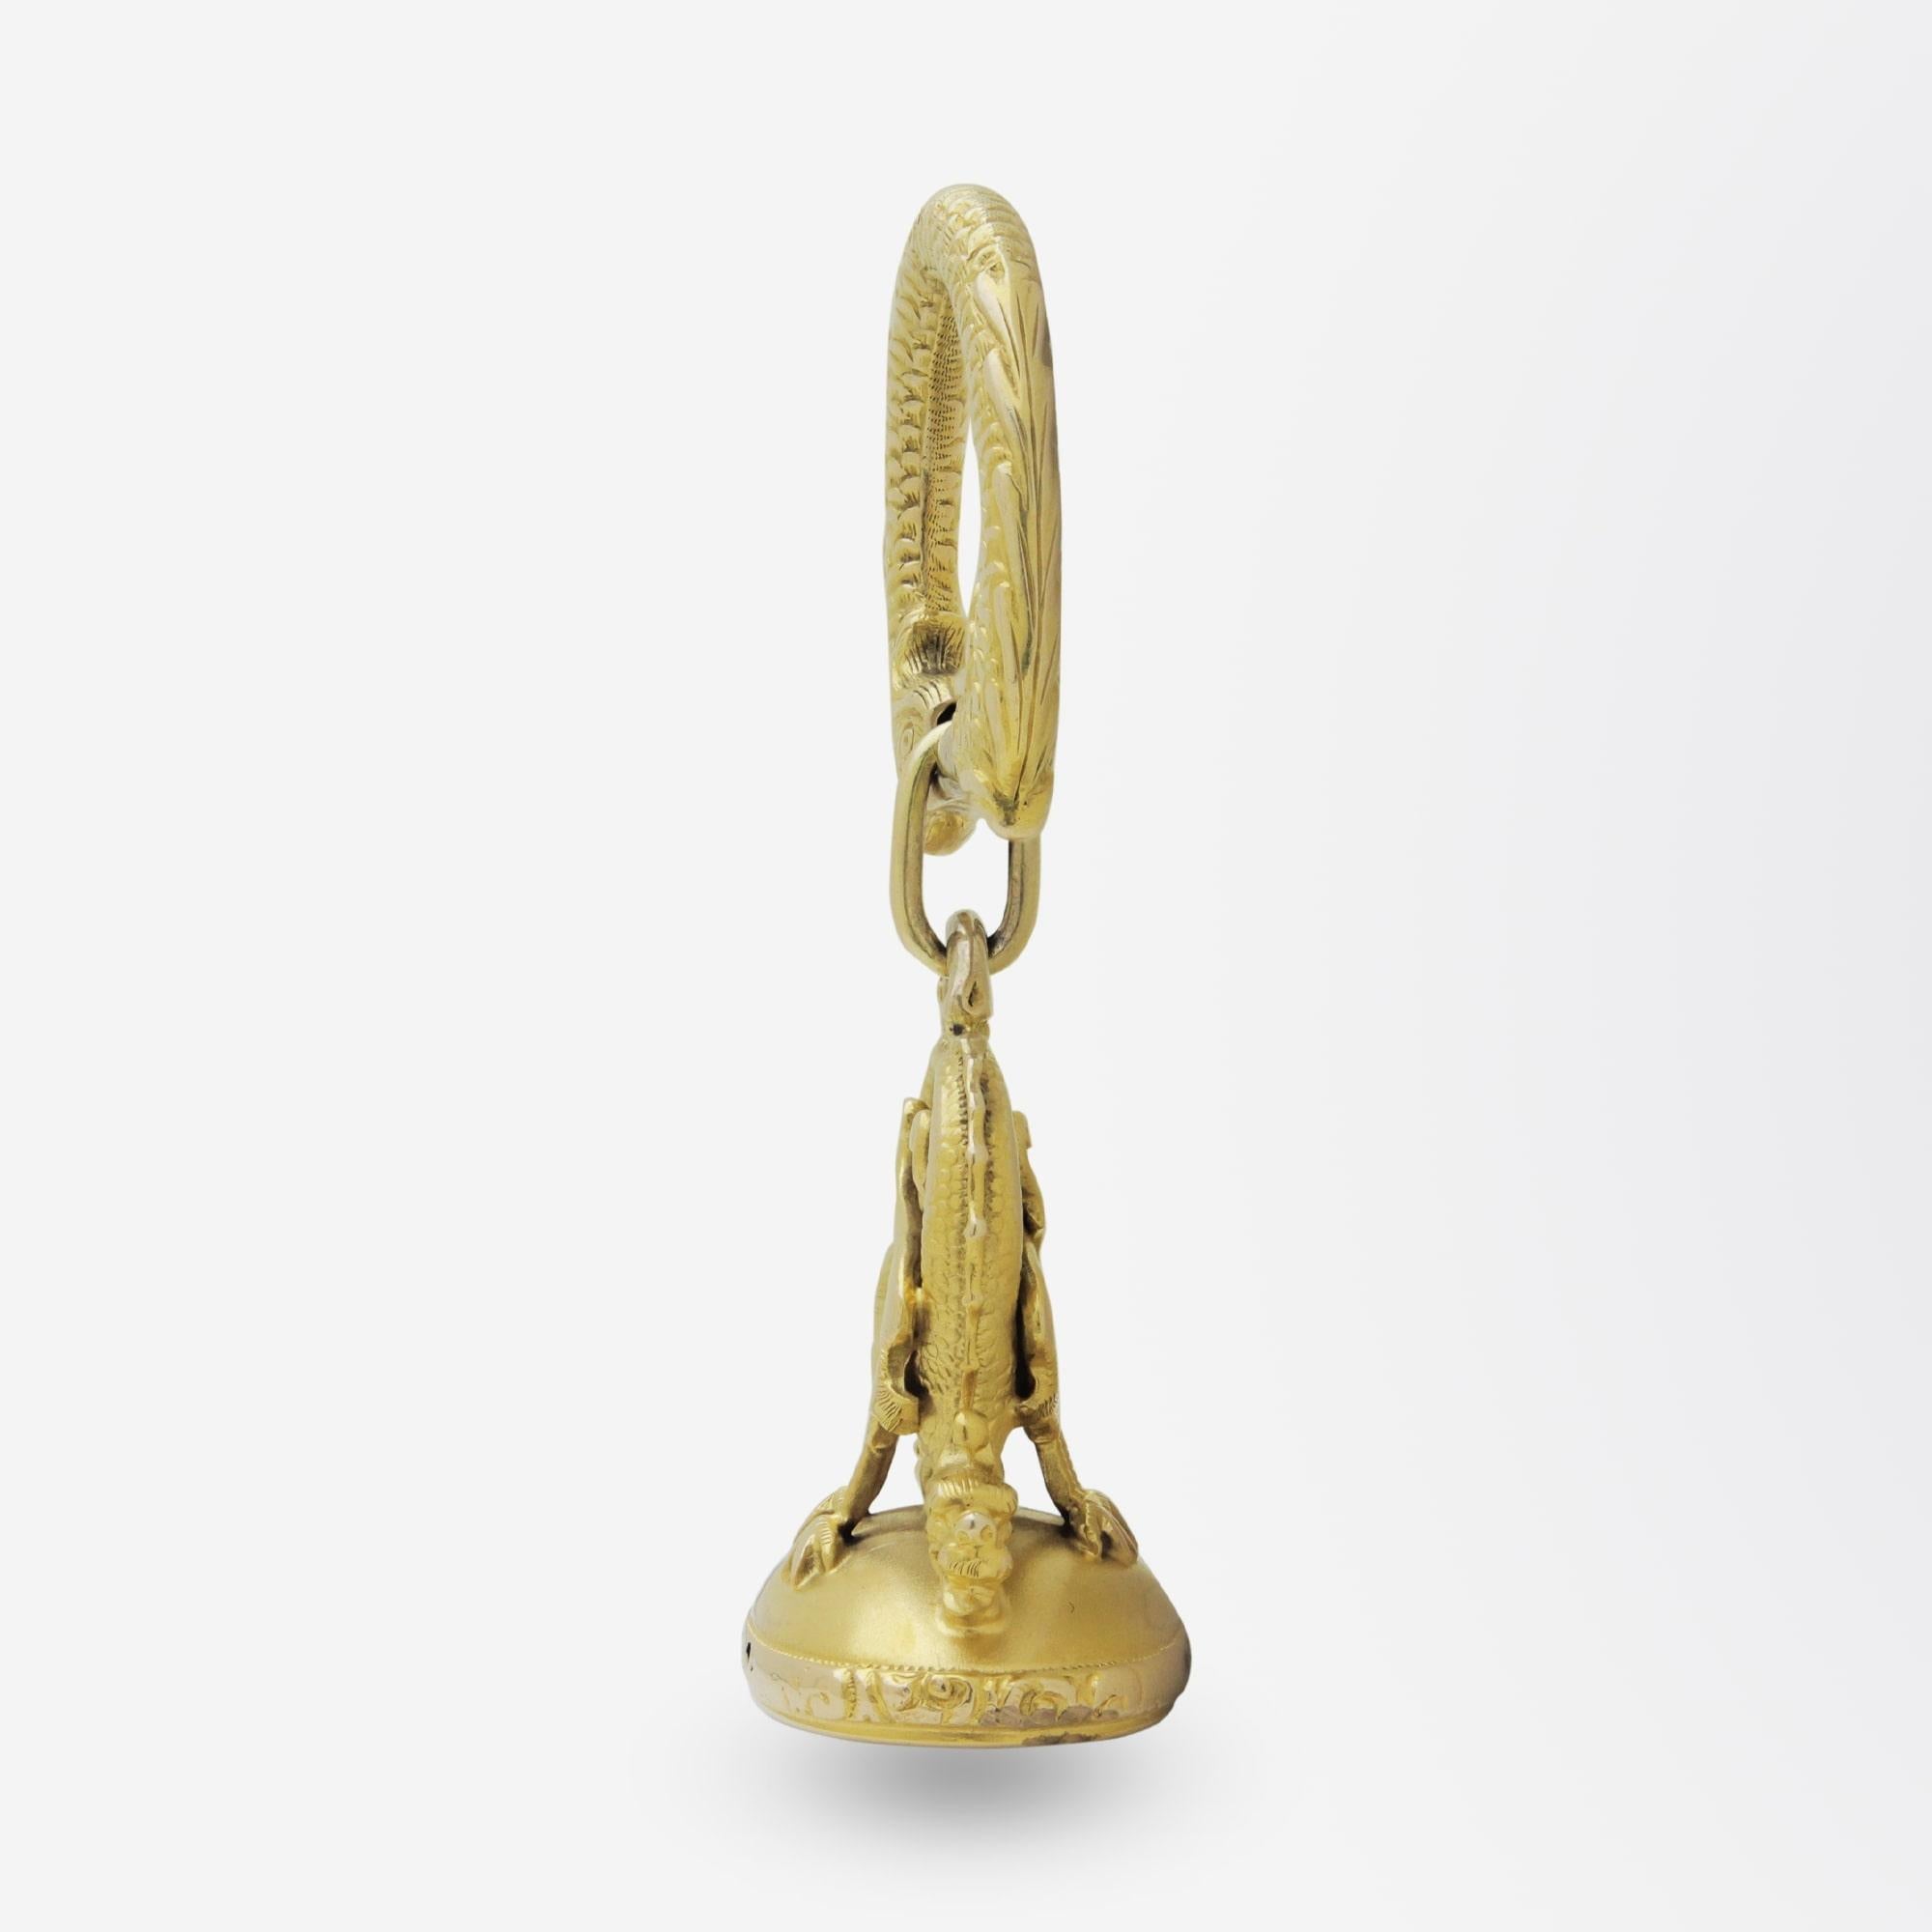 Un pendentif en forme de sceau, très complexe et magnifiquement travaillé, datant de l'époque victorienne. La pièce est fabriquée en or jaune 14 carats, mais n'est pas marquée. Le pendentif creux est composé d'une paire de griffons qui surplombent